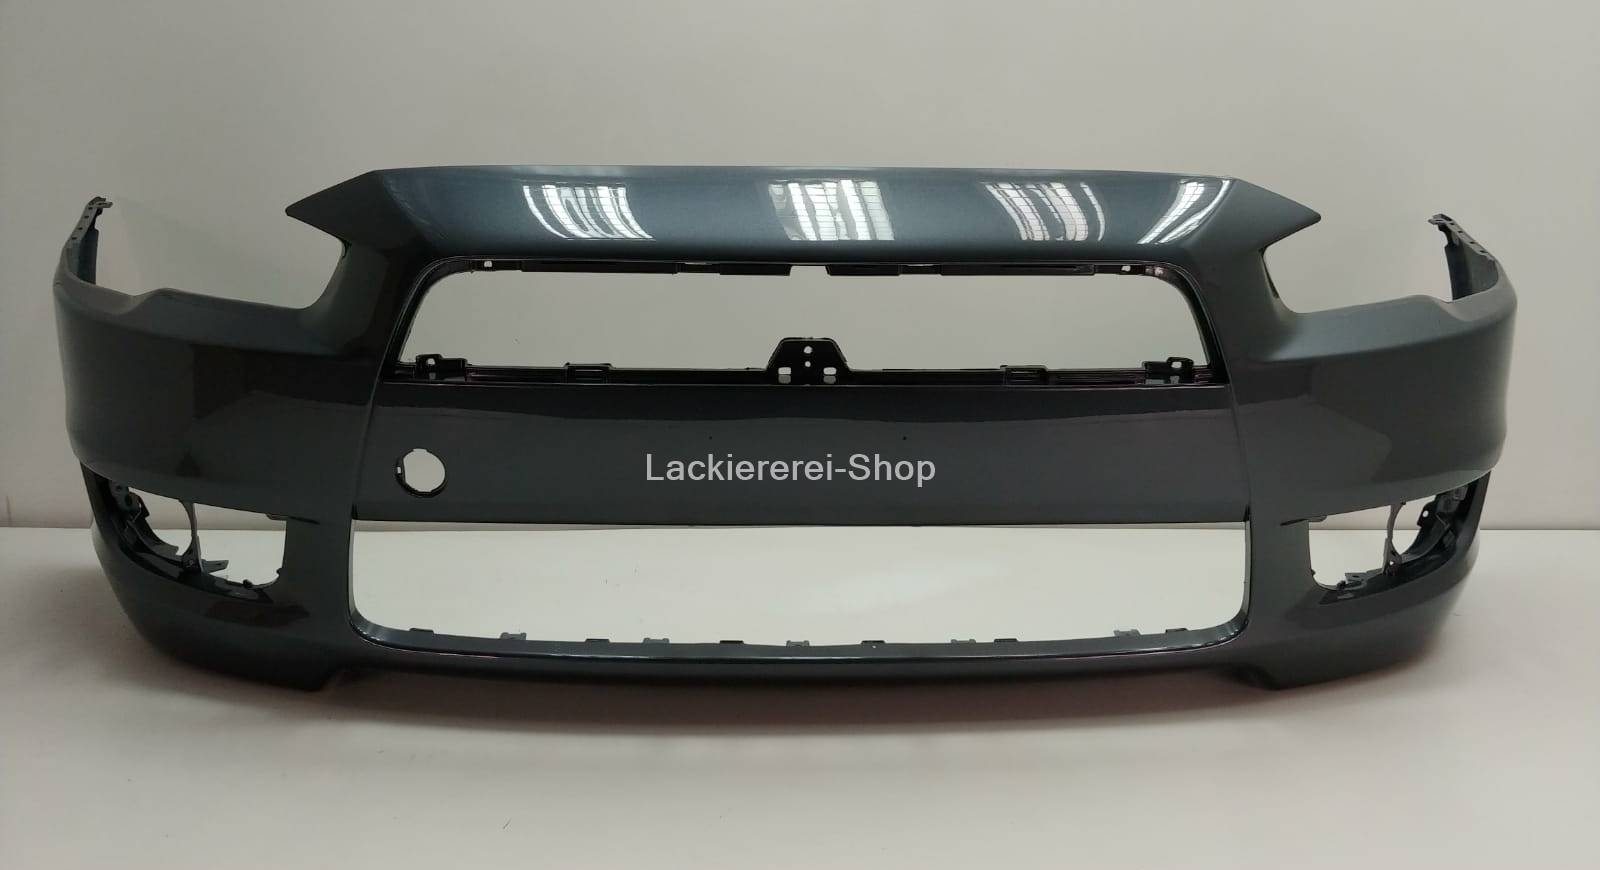 IN NEU VORNE WUNSCHFARBE für LACKIERT STOßSTANGE Mitsubishi Lancer 2007-2011 –